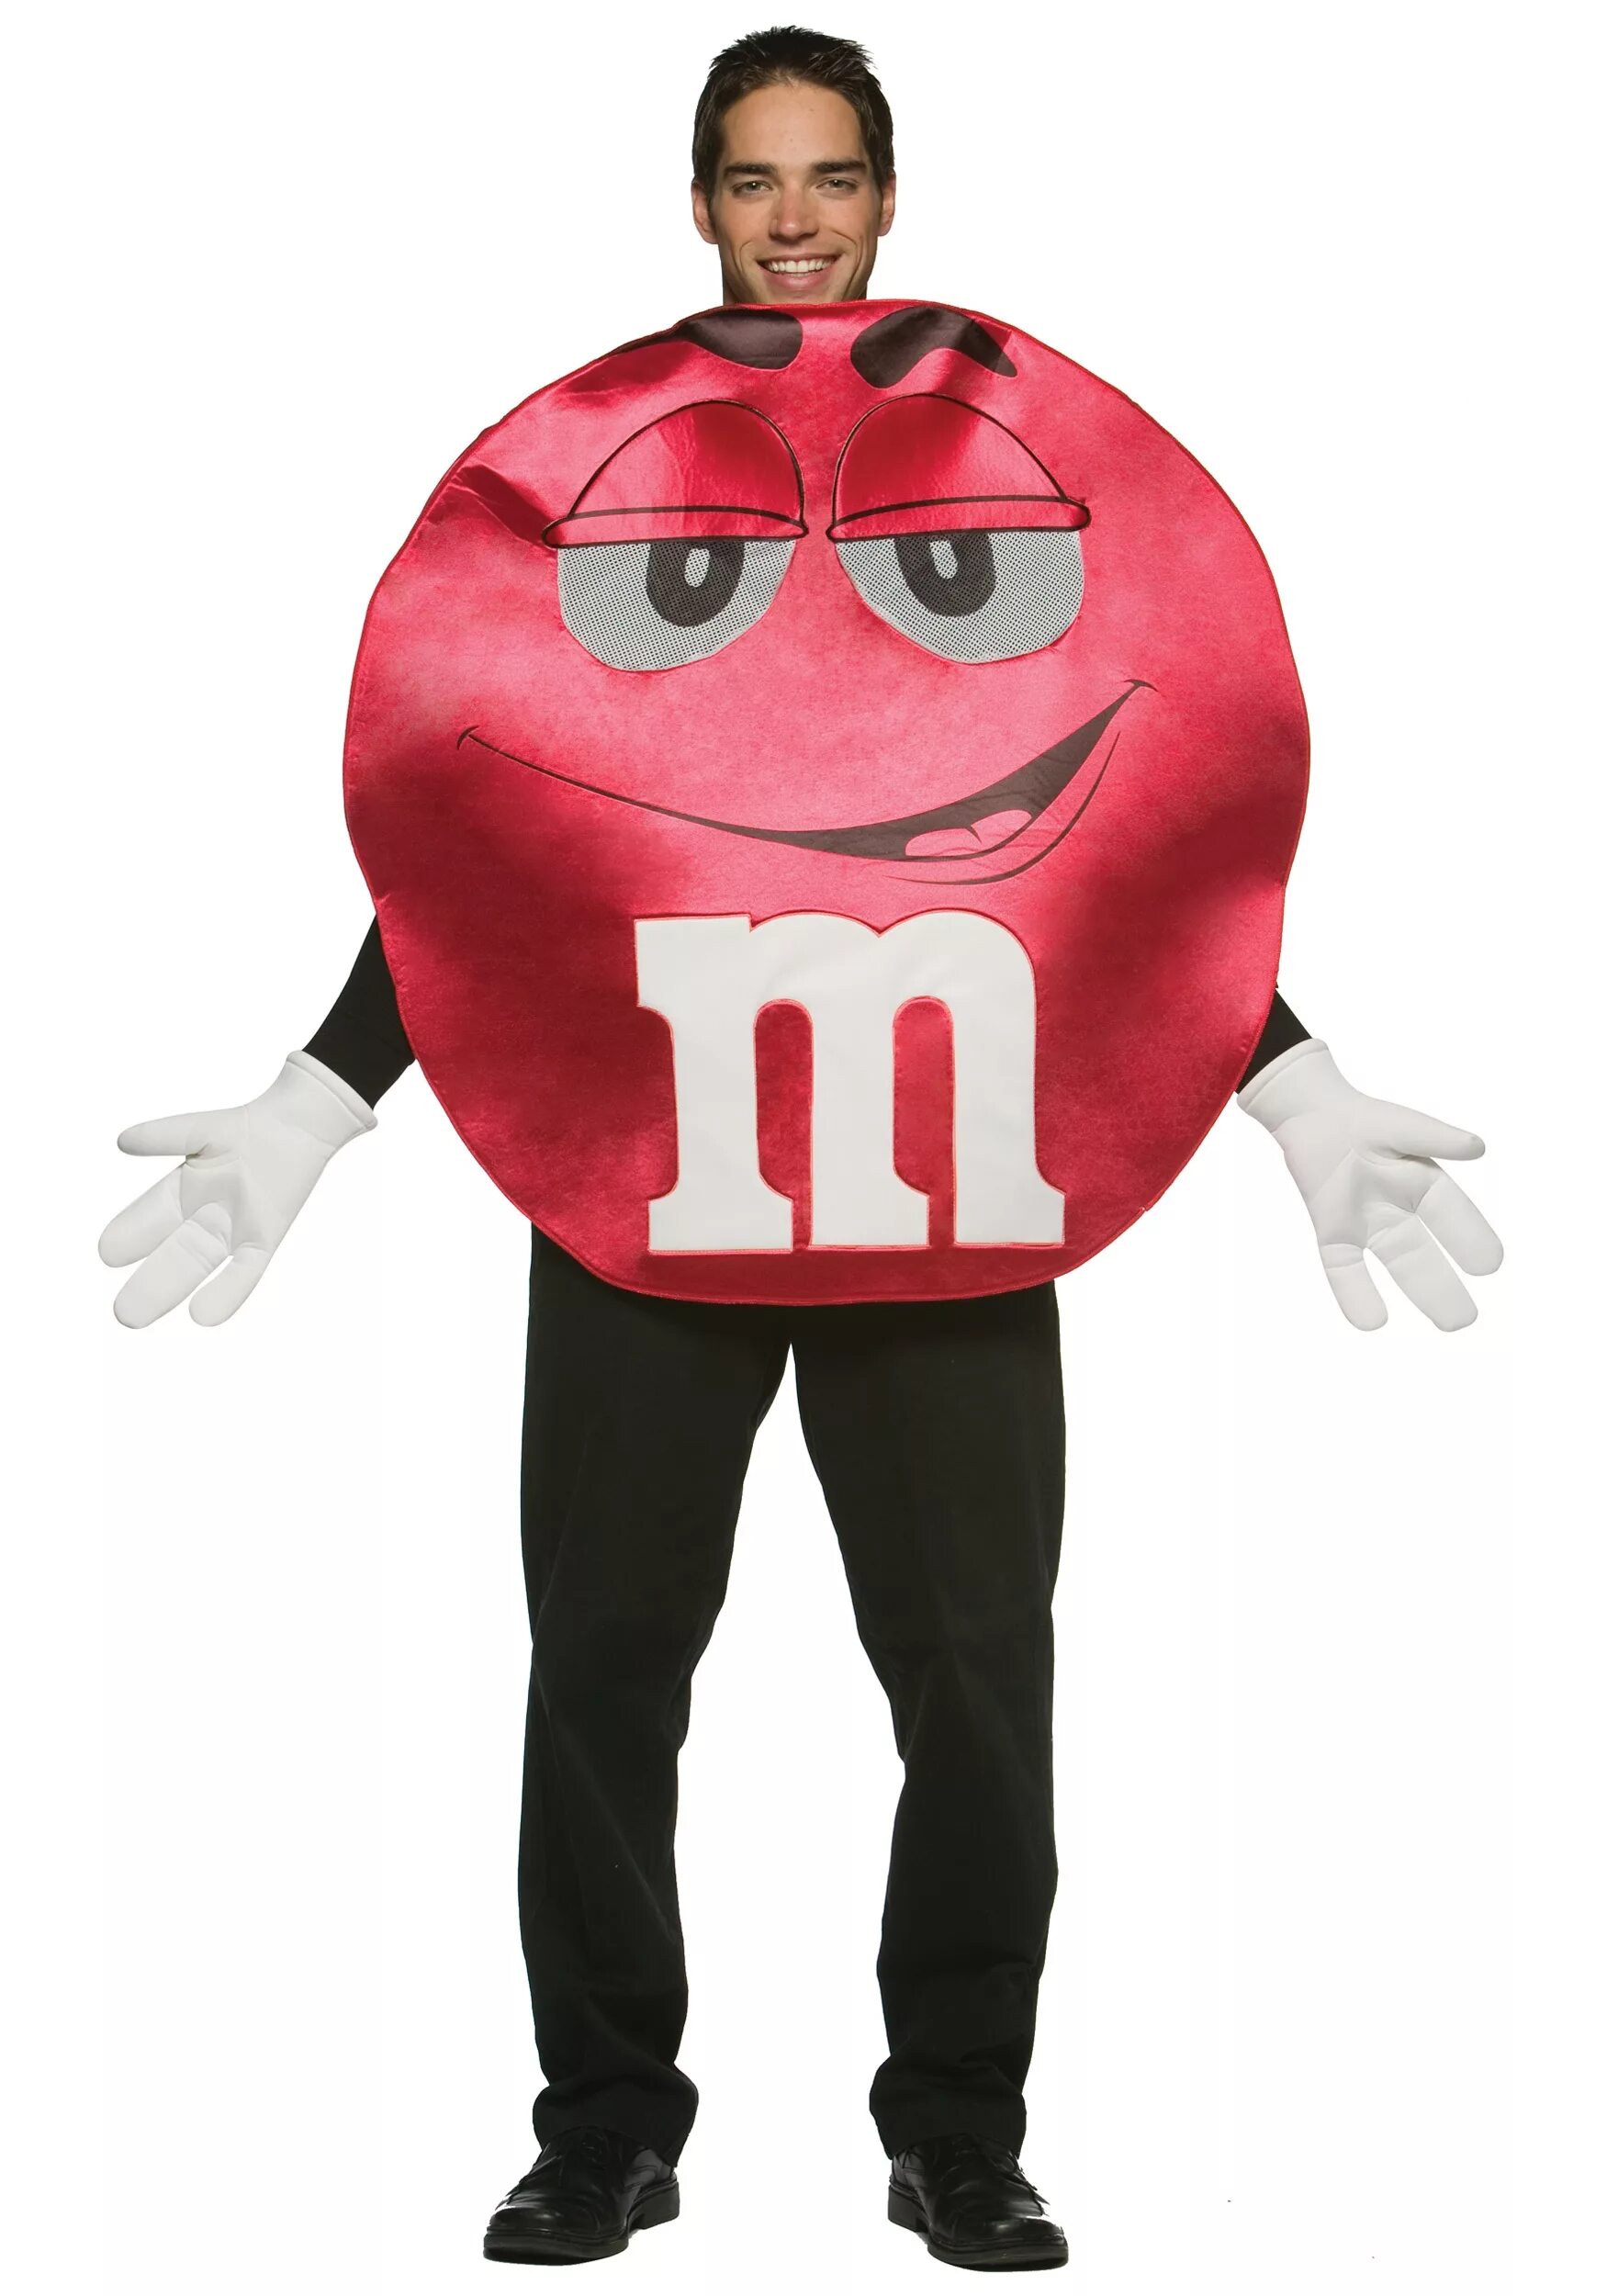 Ред м. Красный m m's. Костюм m&MS. Костюм m m's. Хэллоуин костюм m&MS.